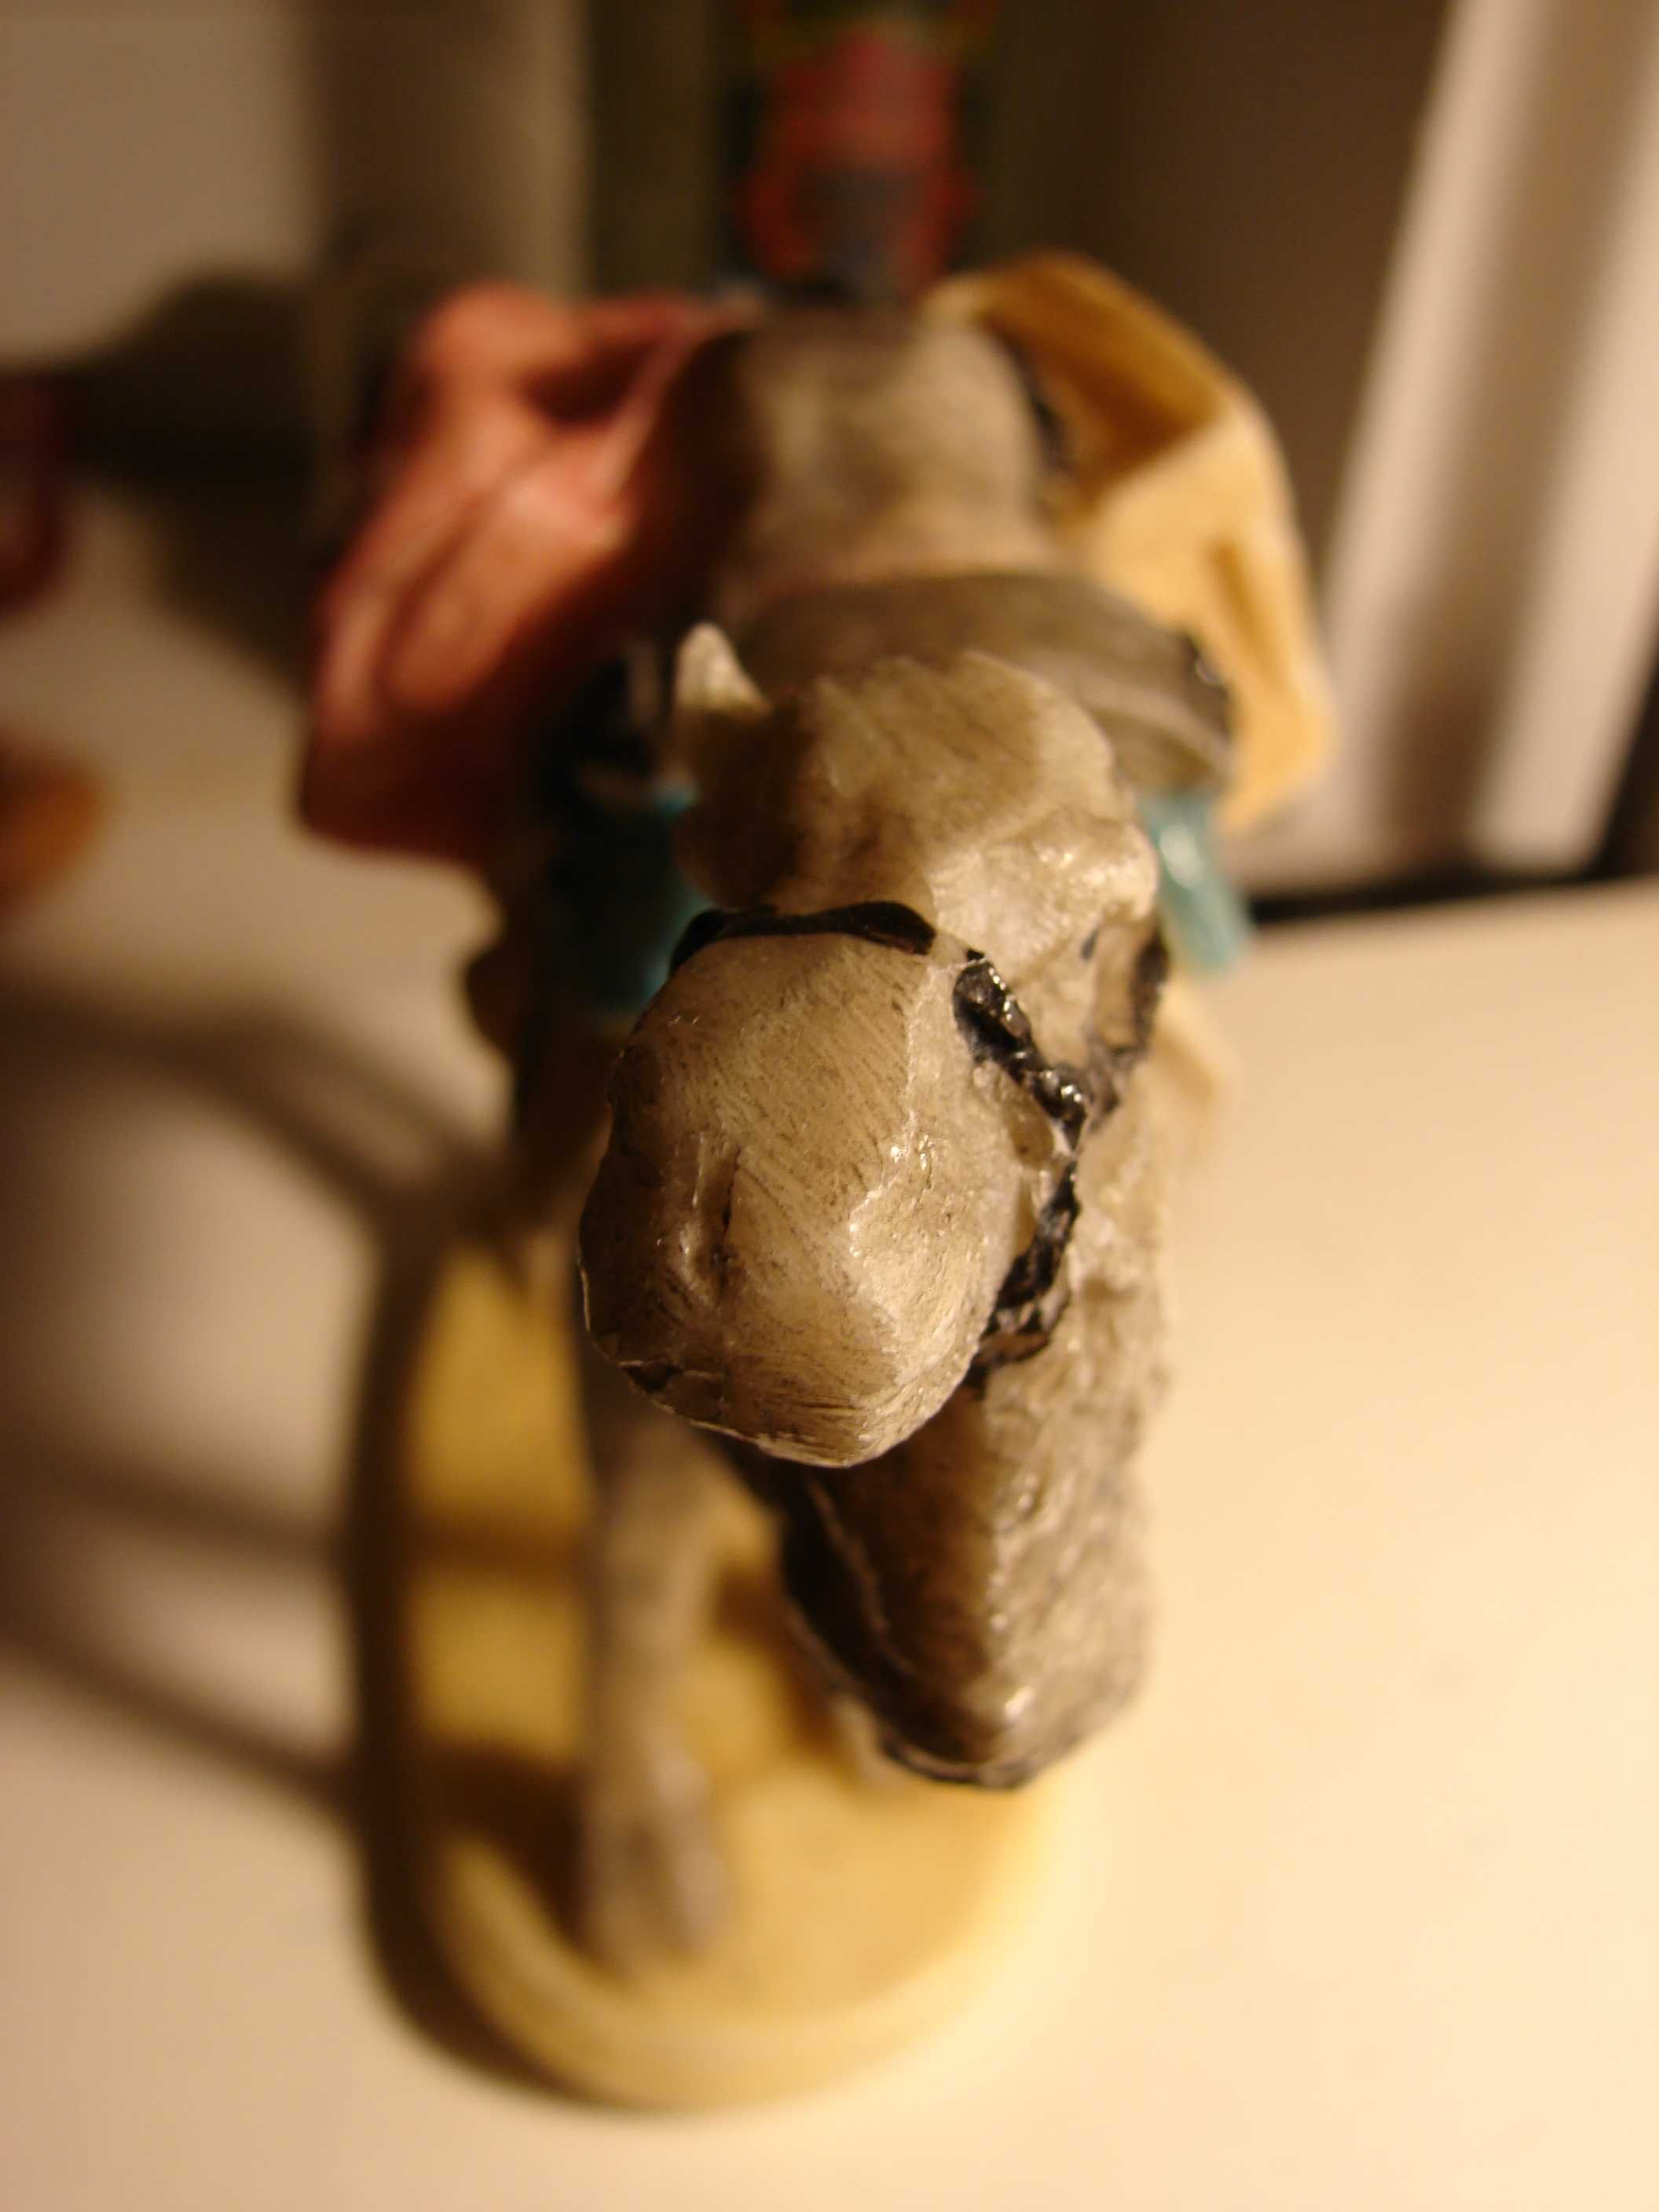 Figurka zabawka objuczony wielbłąd Camel art kamień rzeźba do papieru